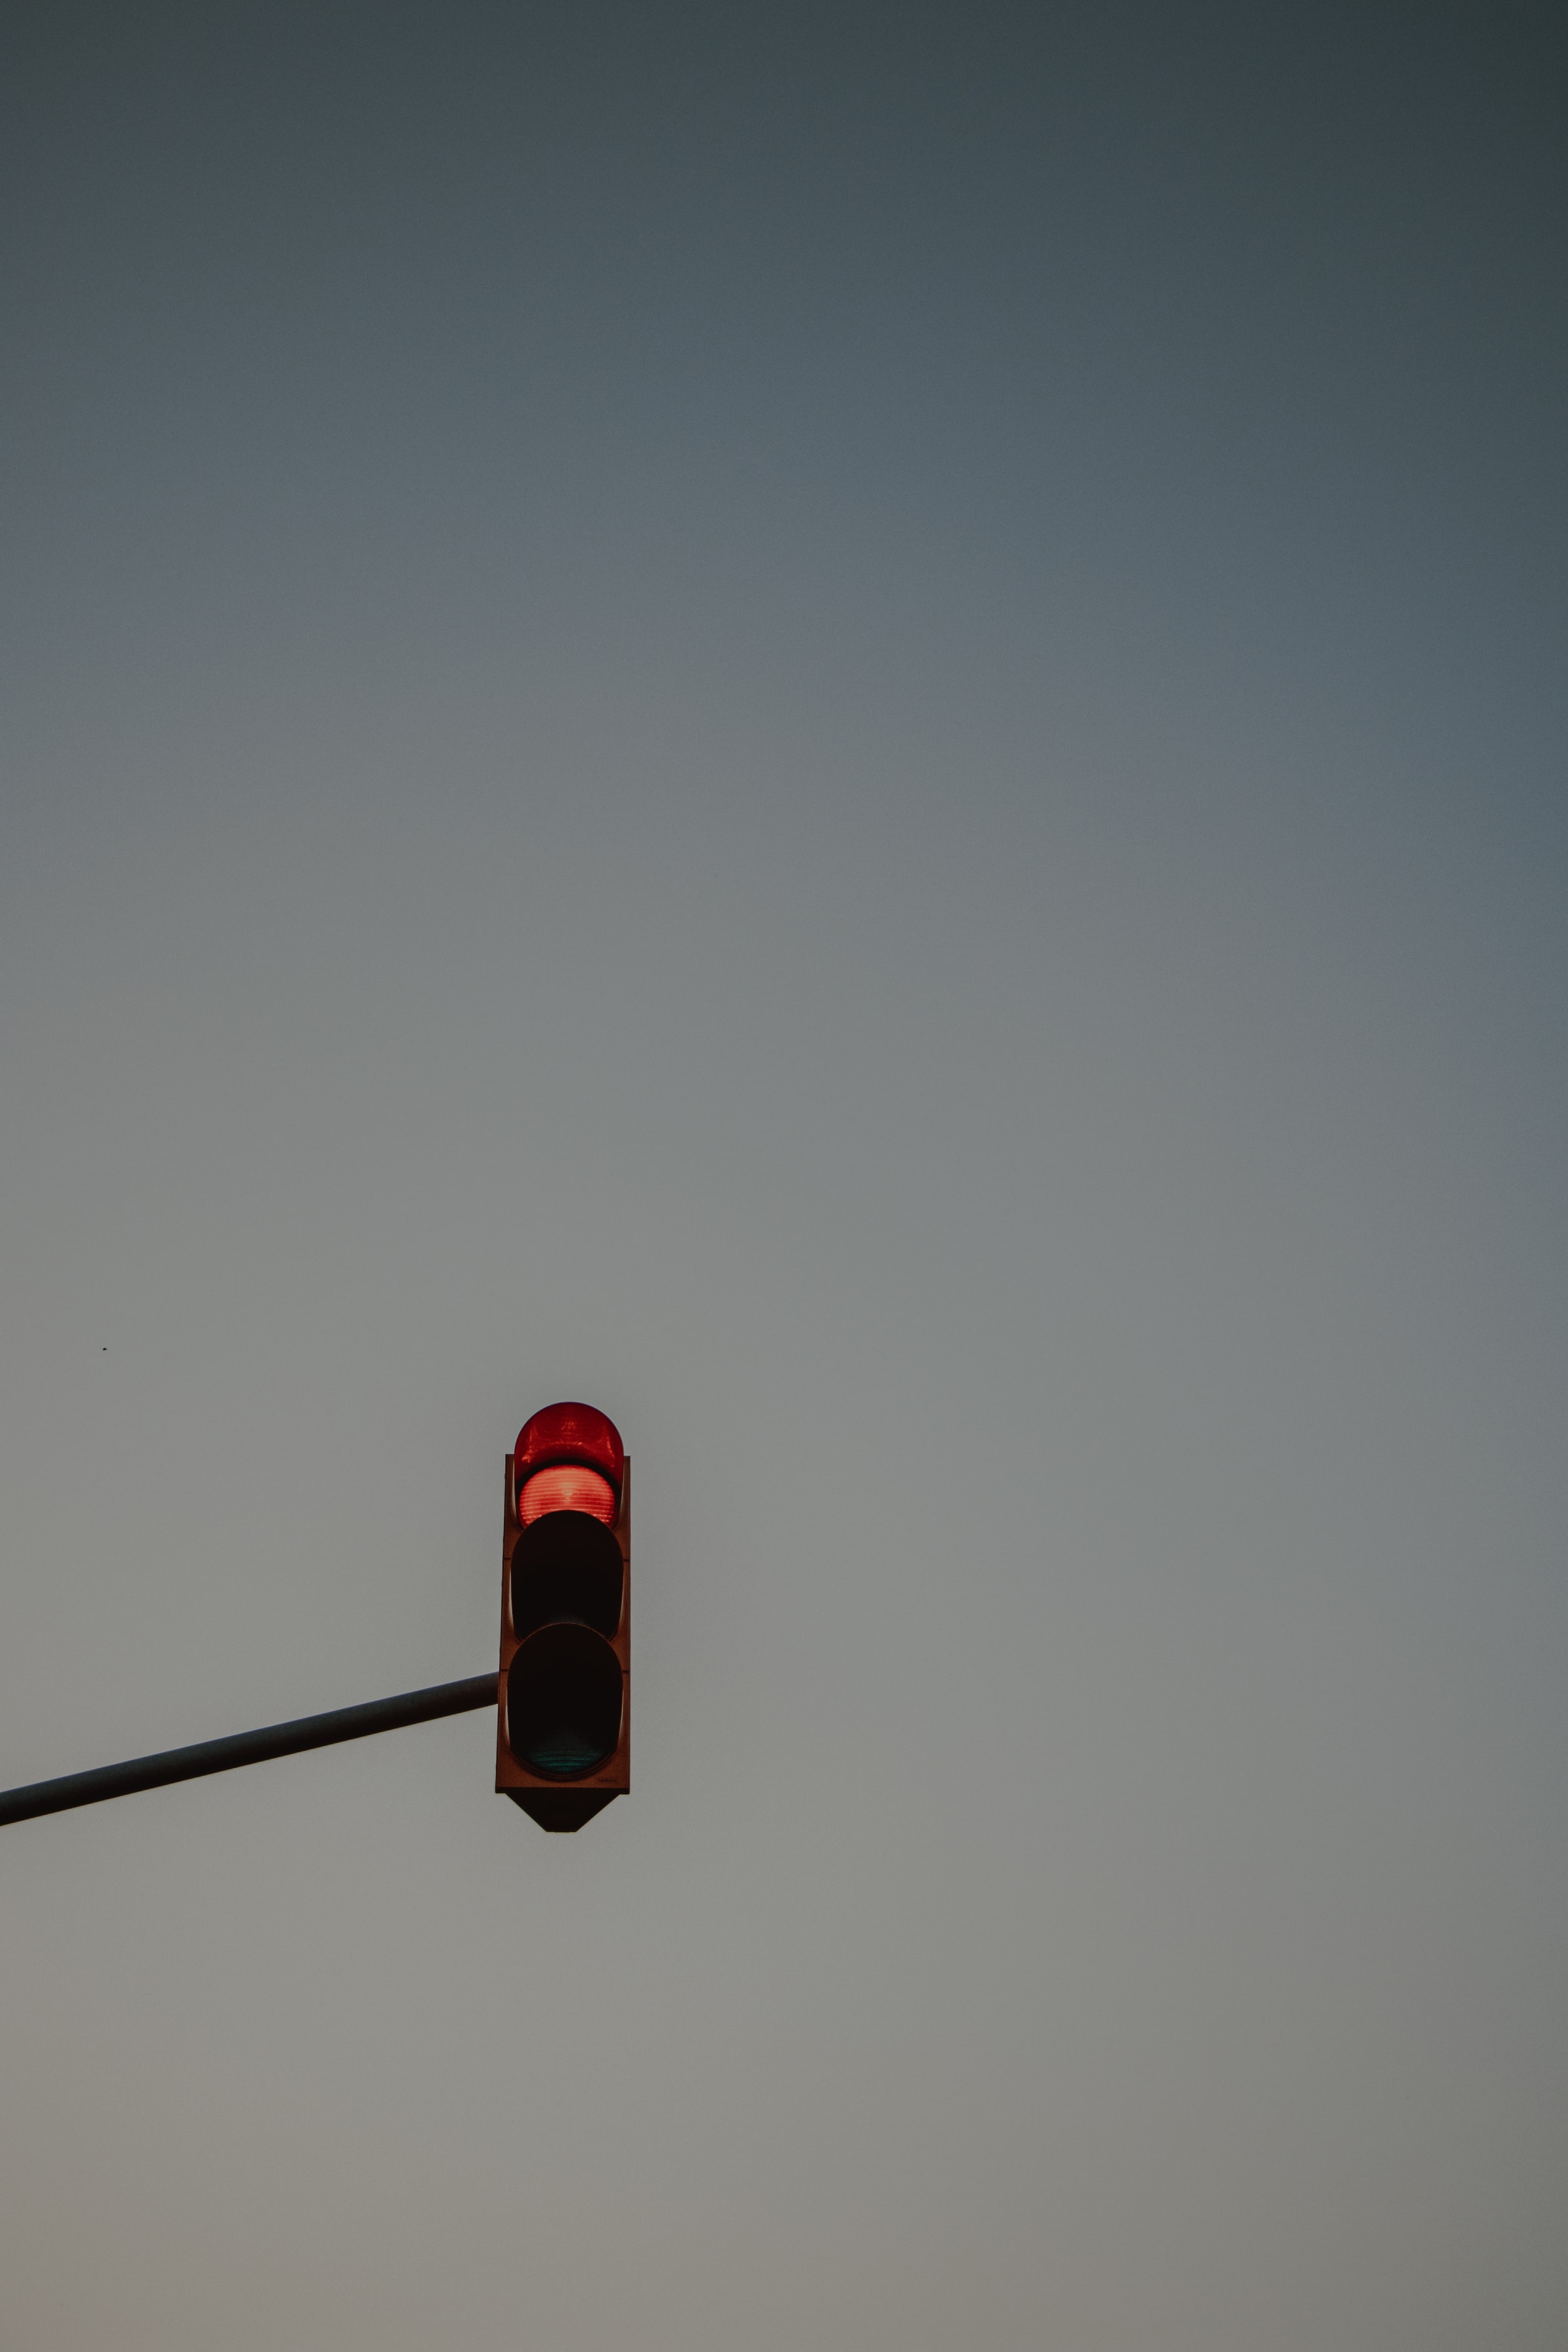 sign, minimalism, sky, traffic light QHD